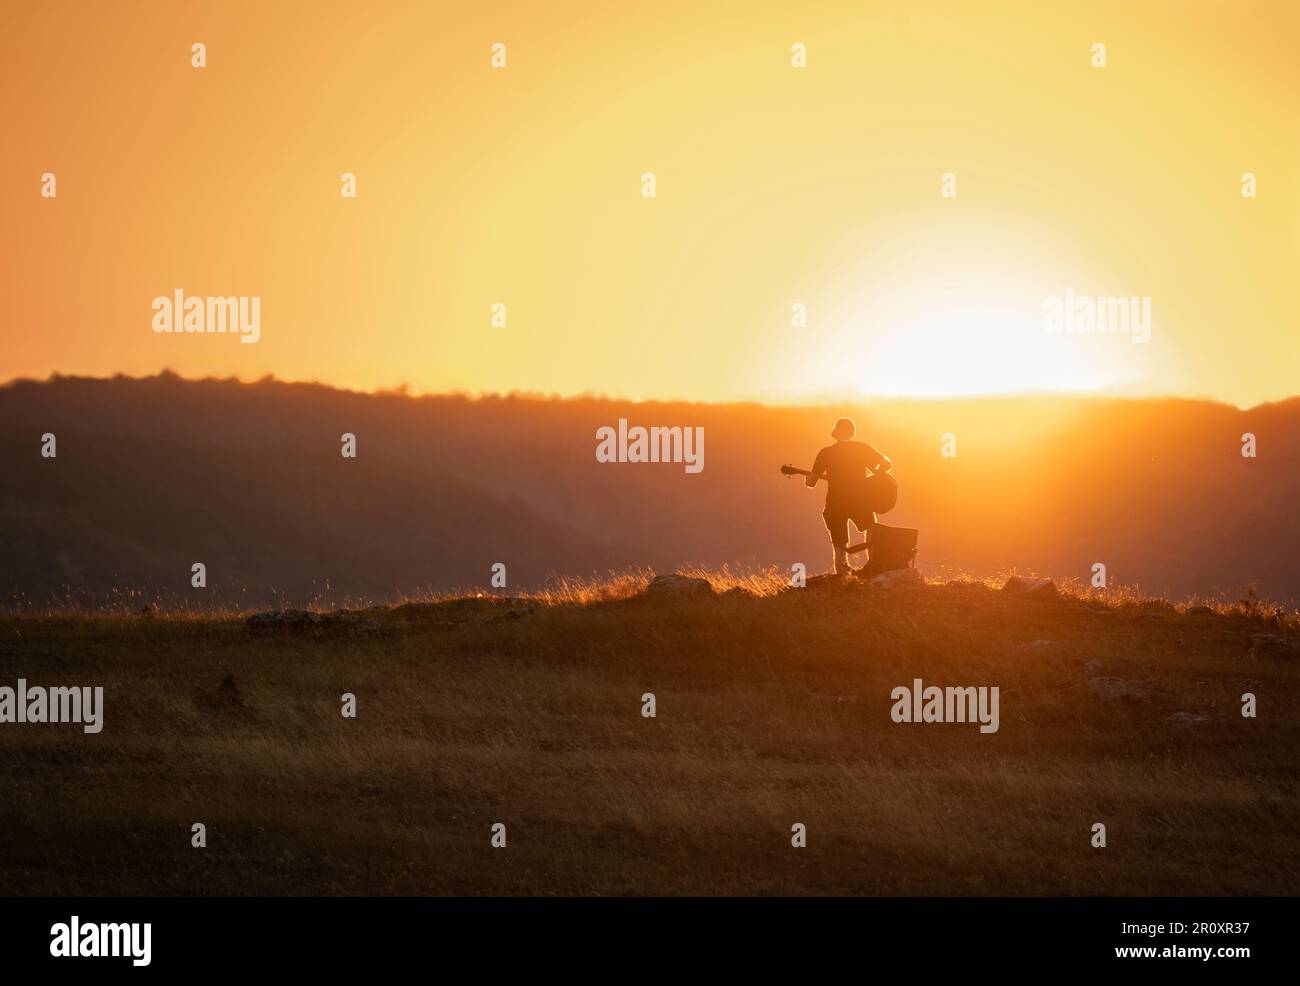 Silhouette eines Mannes, der bei Sonnenuntergang Gitarre spielt. Hügel im Hintergrund. Orangefarbener Himmel. Stockfoto